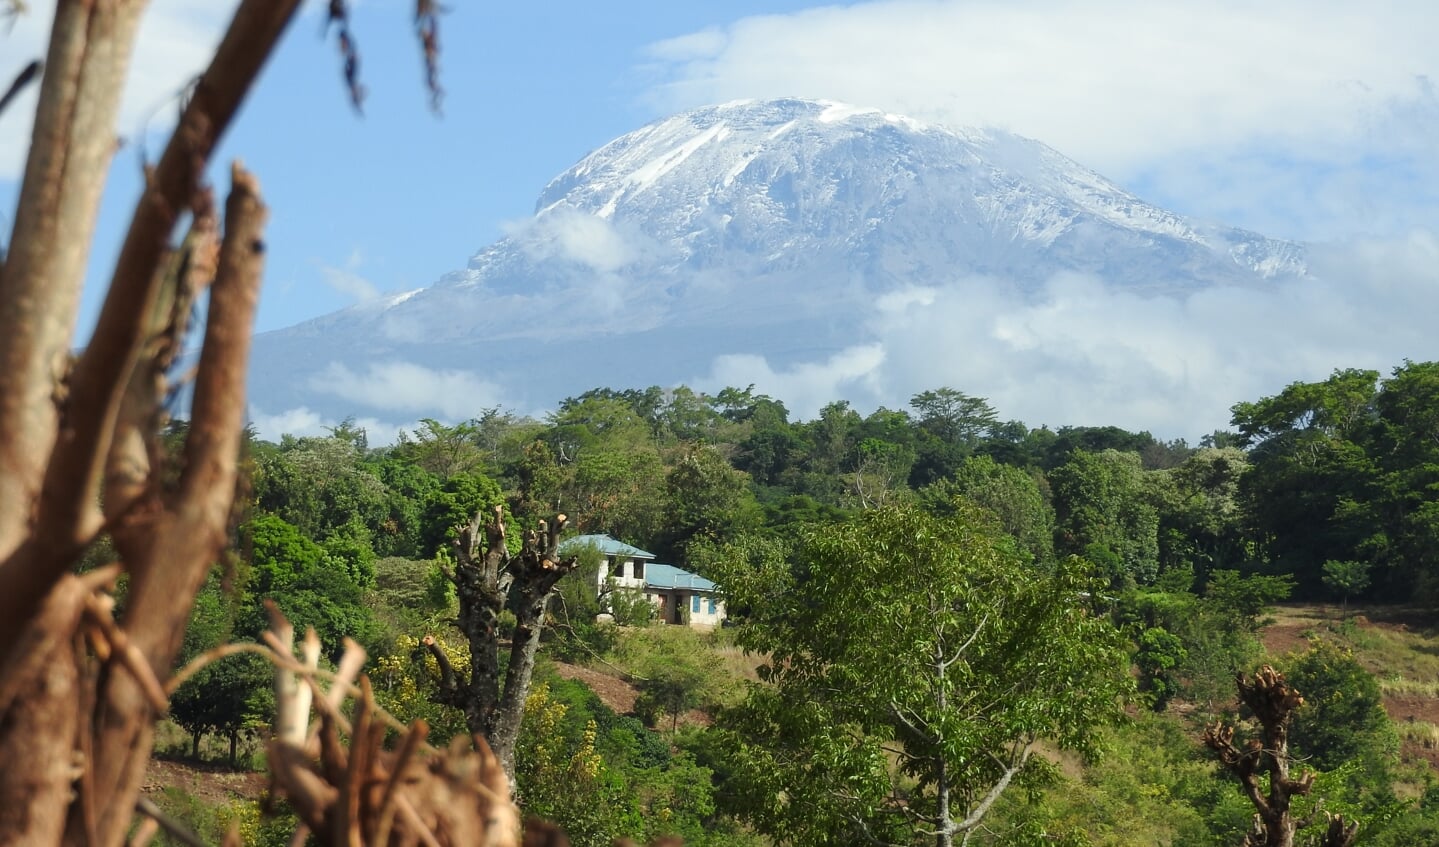 Mount Kilimanjaro (5895 m)